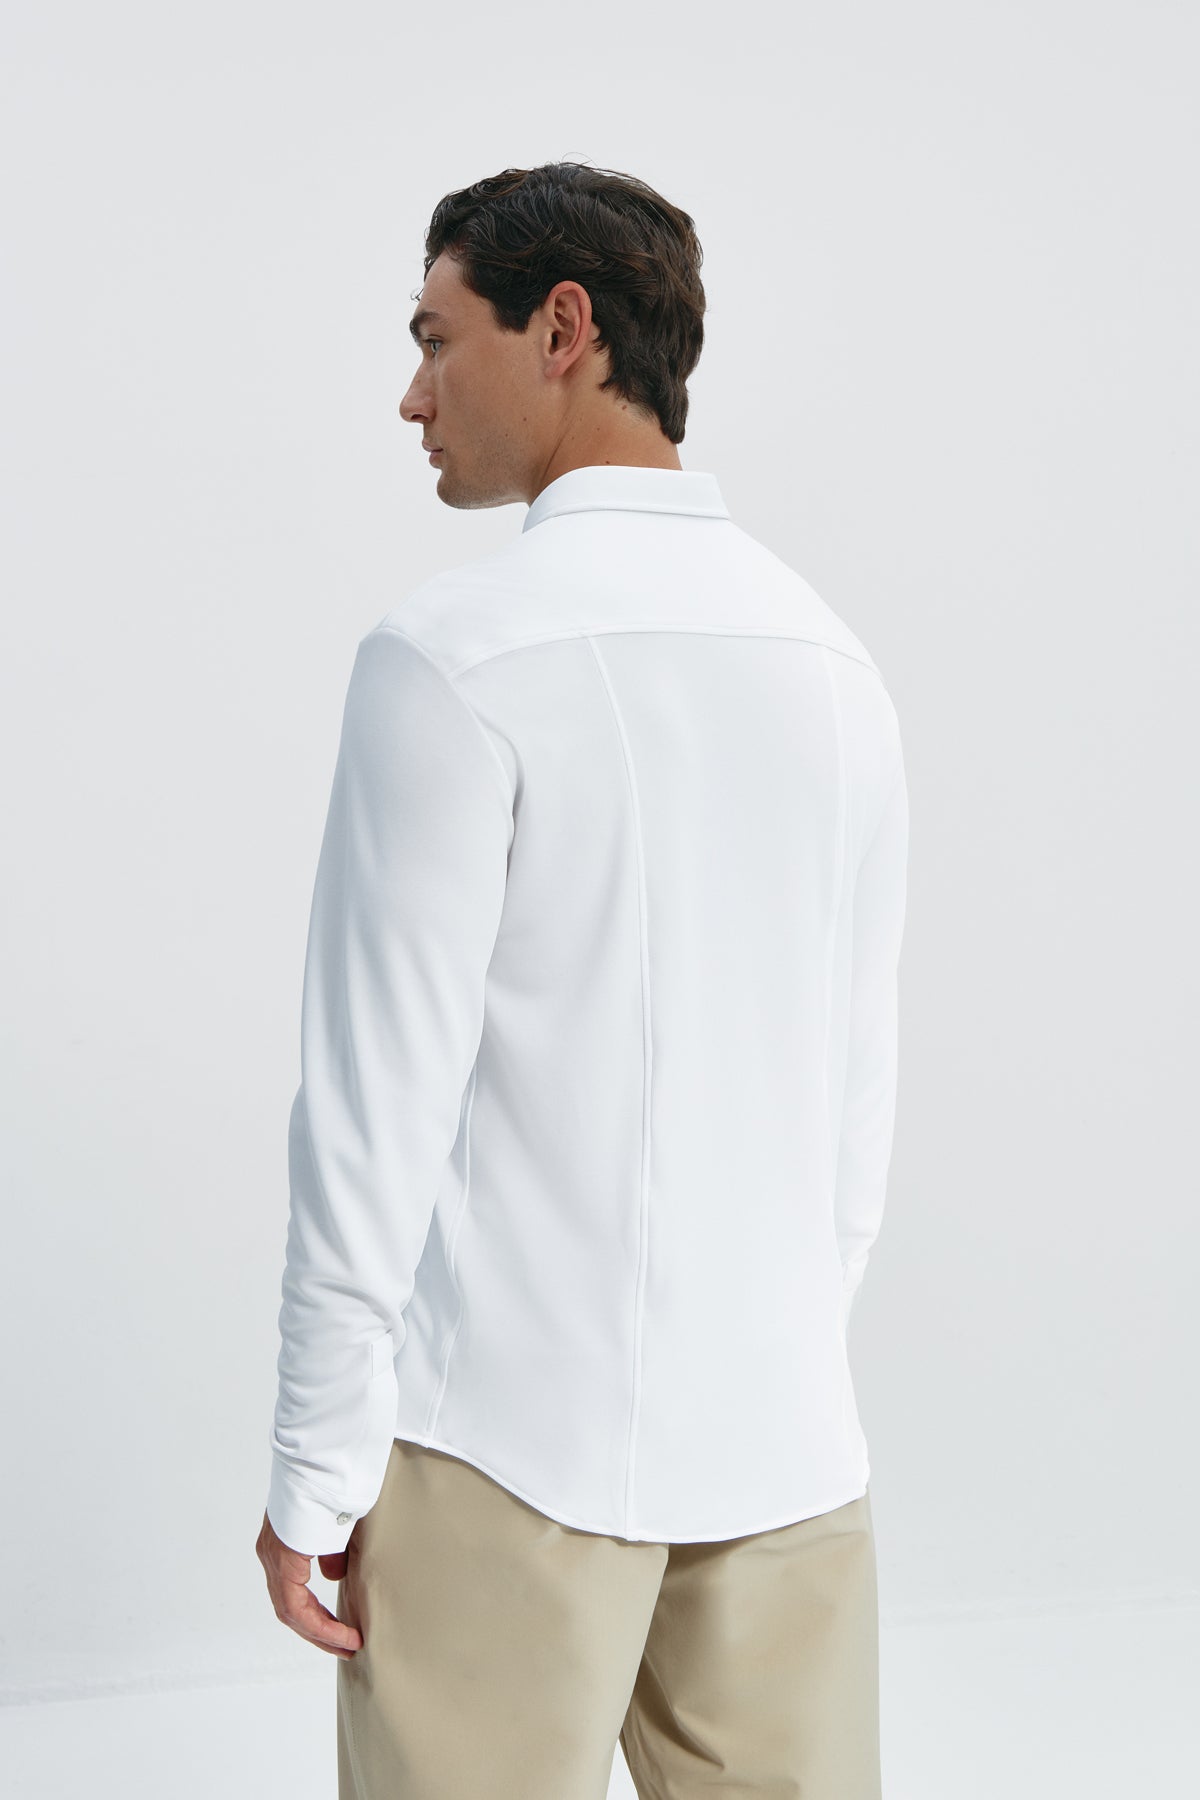 Camisa casual Blanco con logo para hombre sin arrugas ni manchas. Manga larga, antiarrugas y antimanchas. Foto espalda